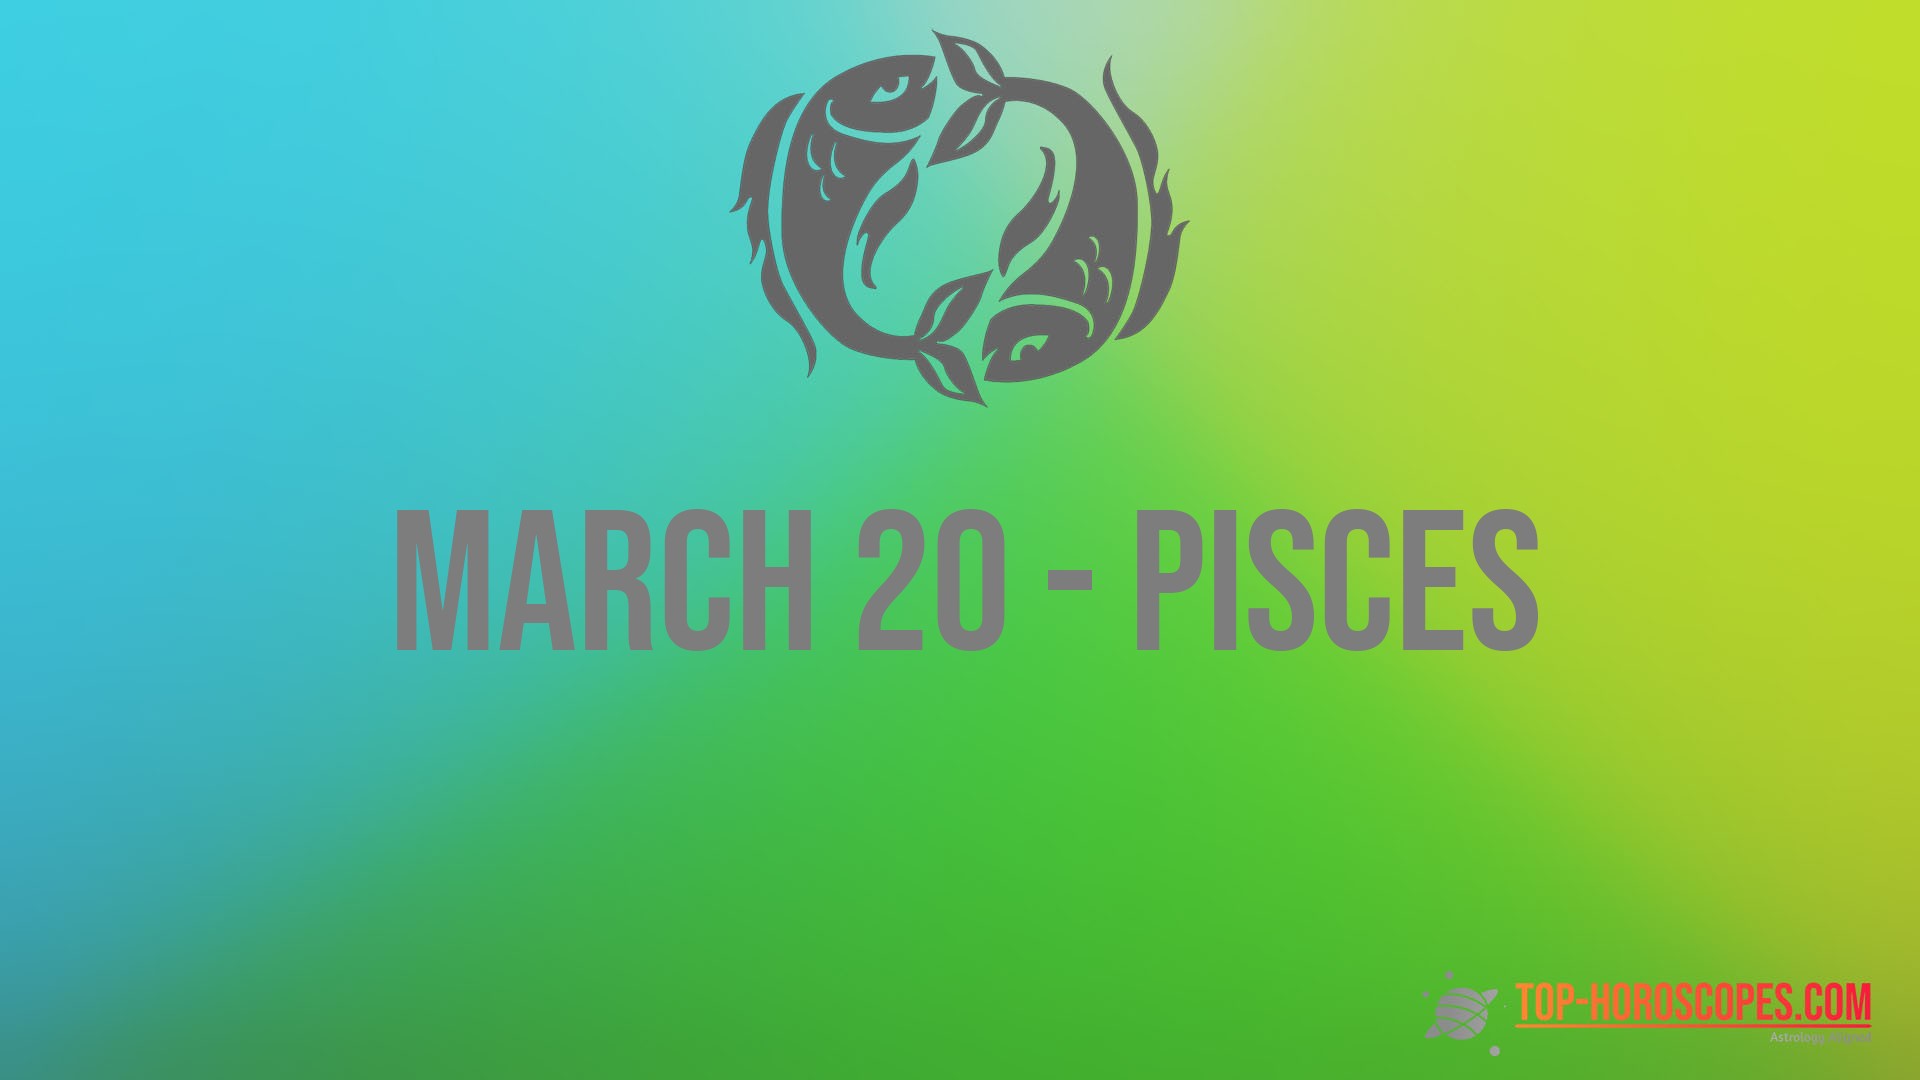 March 20 Zodiac Sign Pisces - Compliant